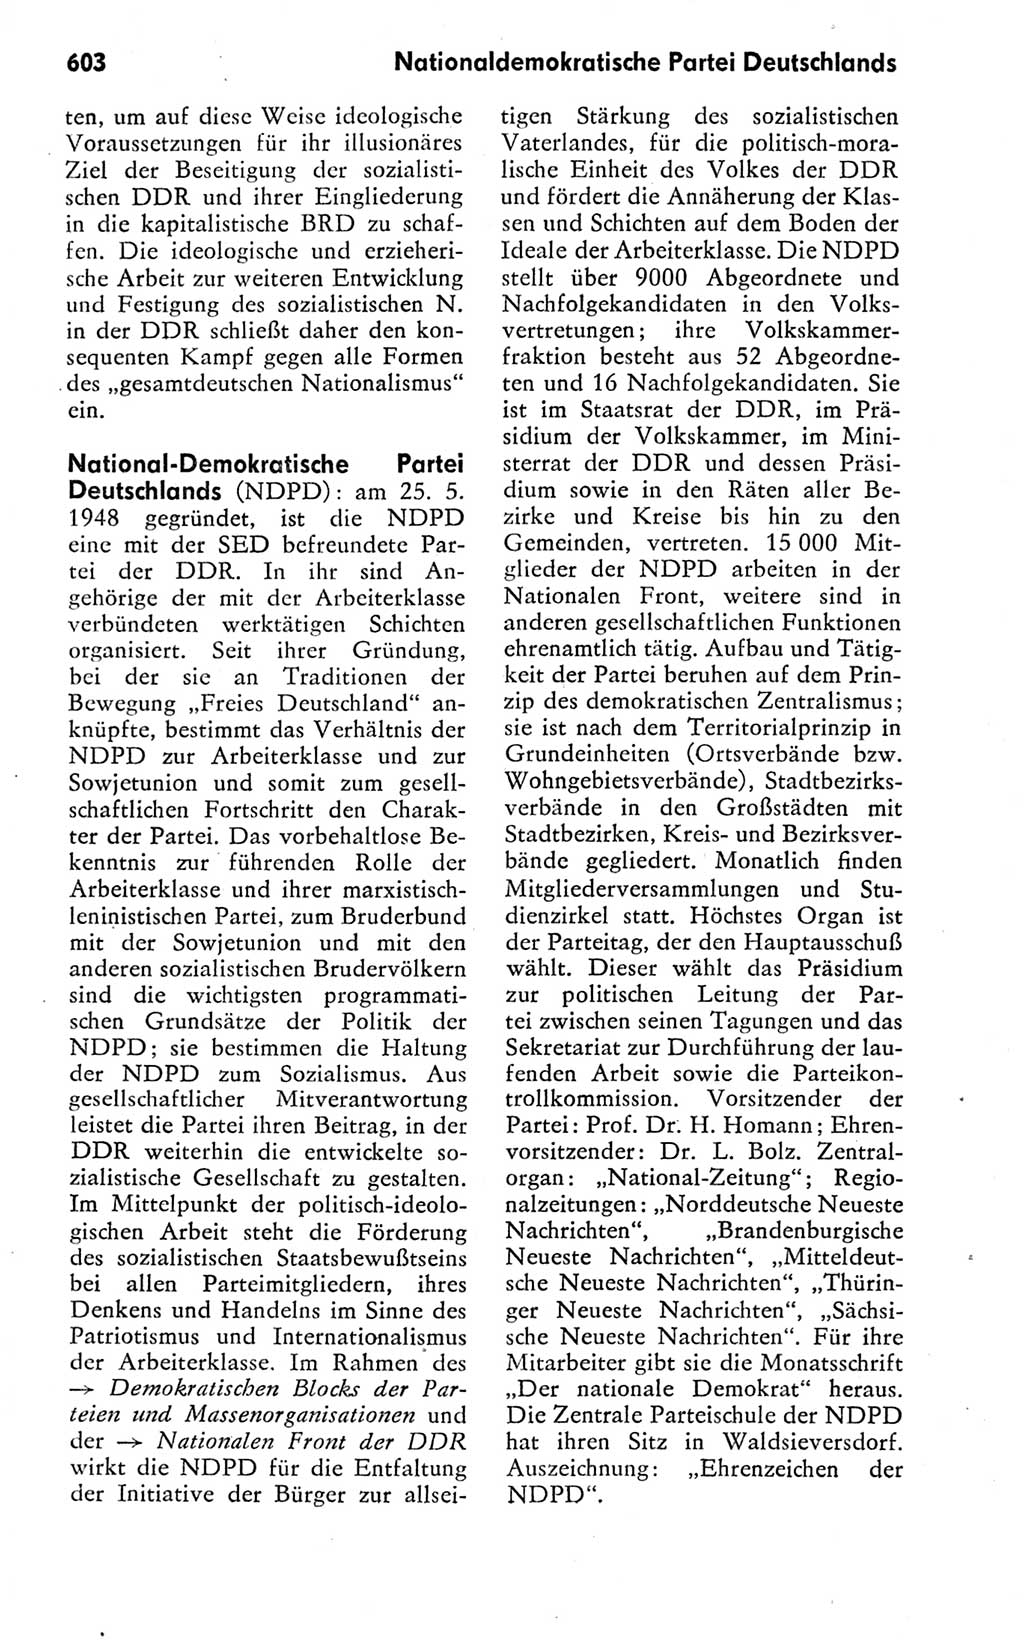 Kleines politisches Wörterbuch [Deutsche Demokratische Republik (DDR)] 1978, Seite 603 (Kl. pol. Wb. DDR 1978, S. 603)